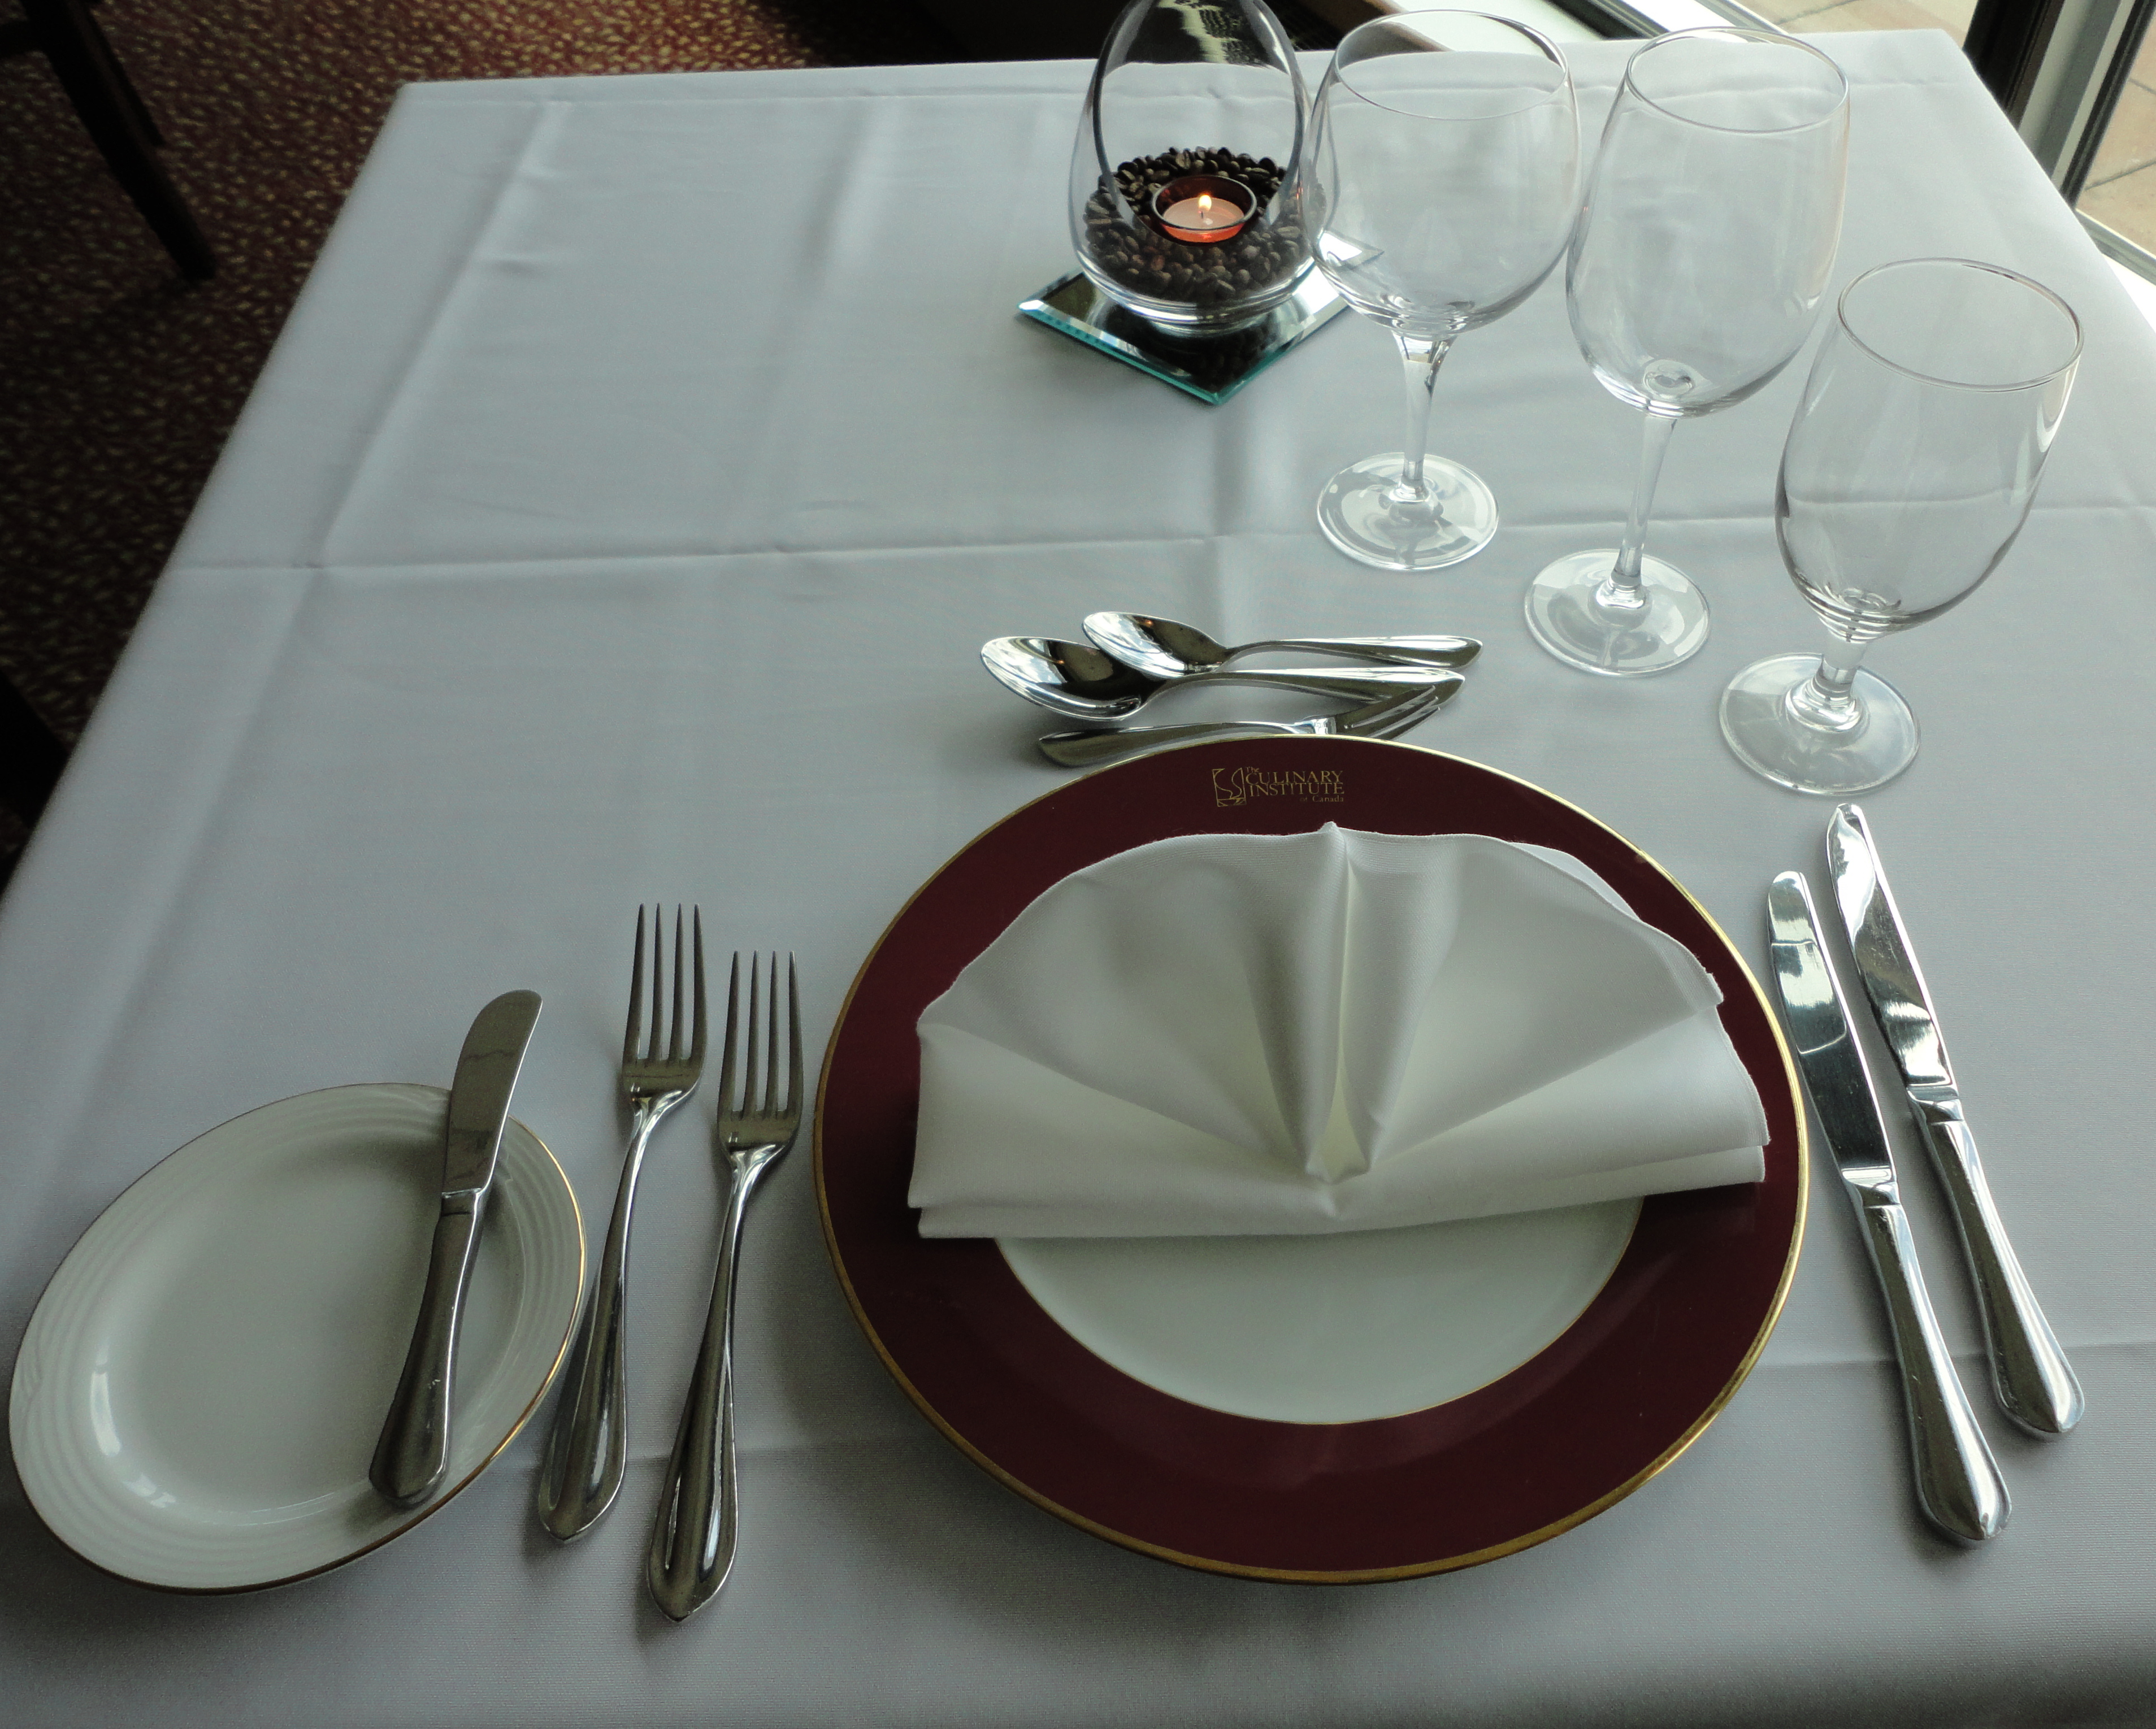 formal dinner setting etiquette